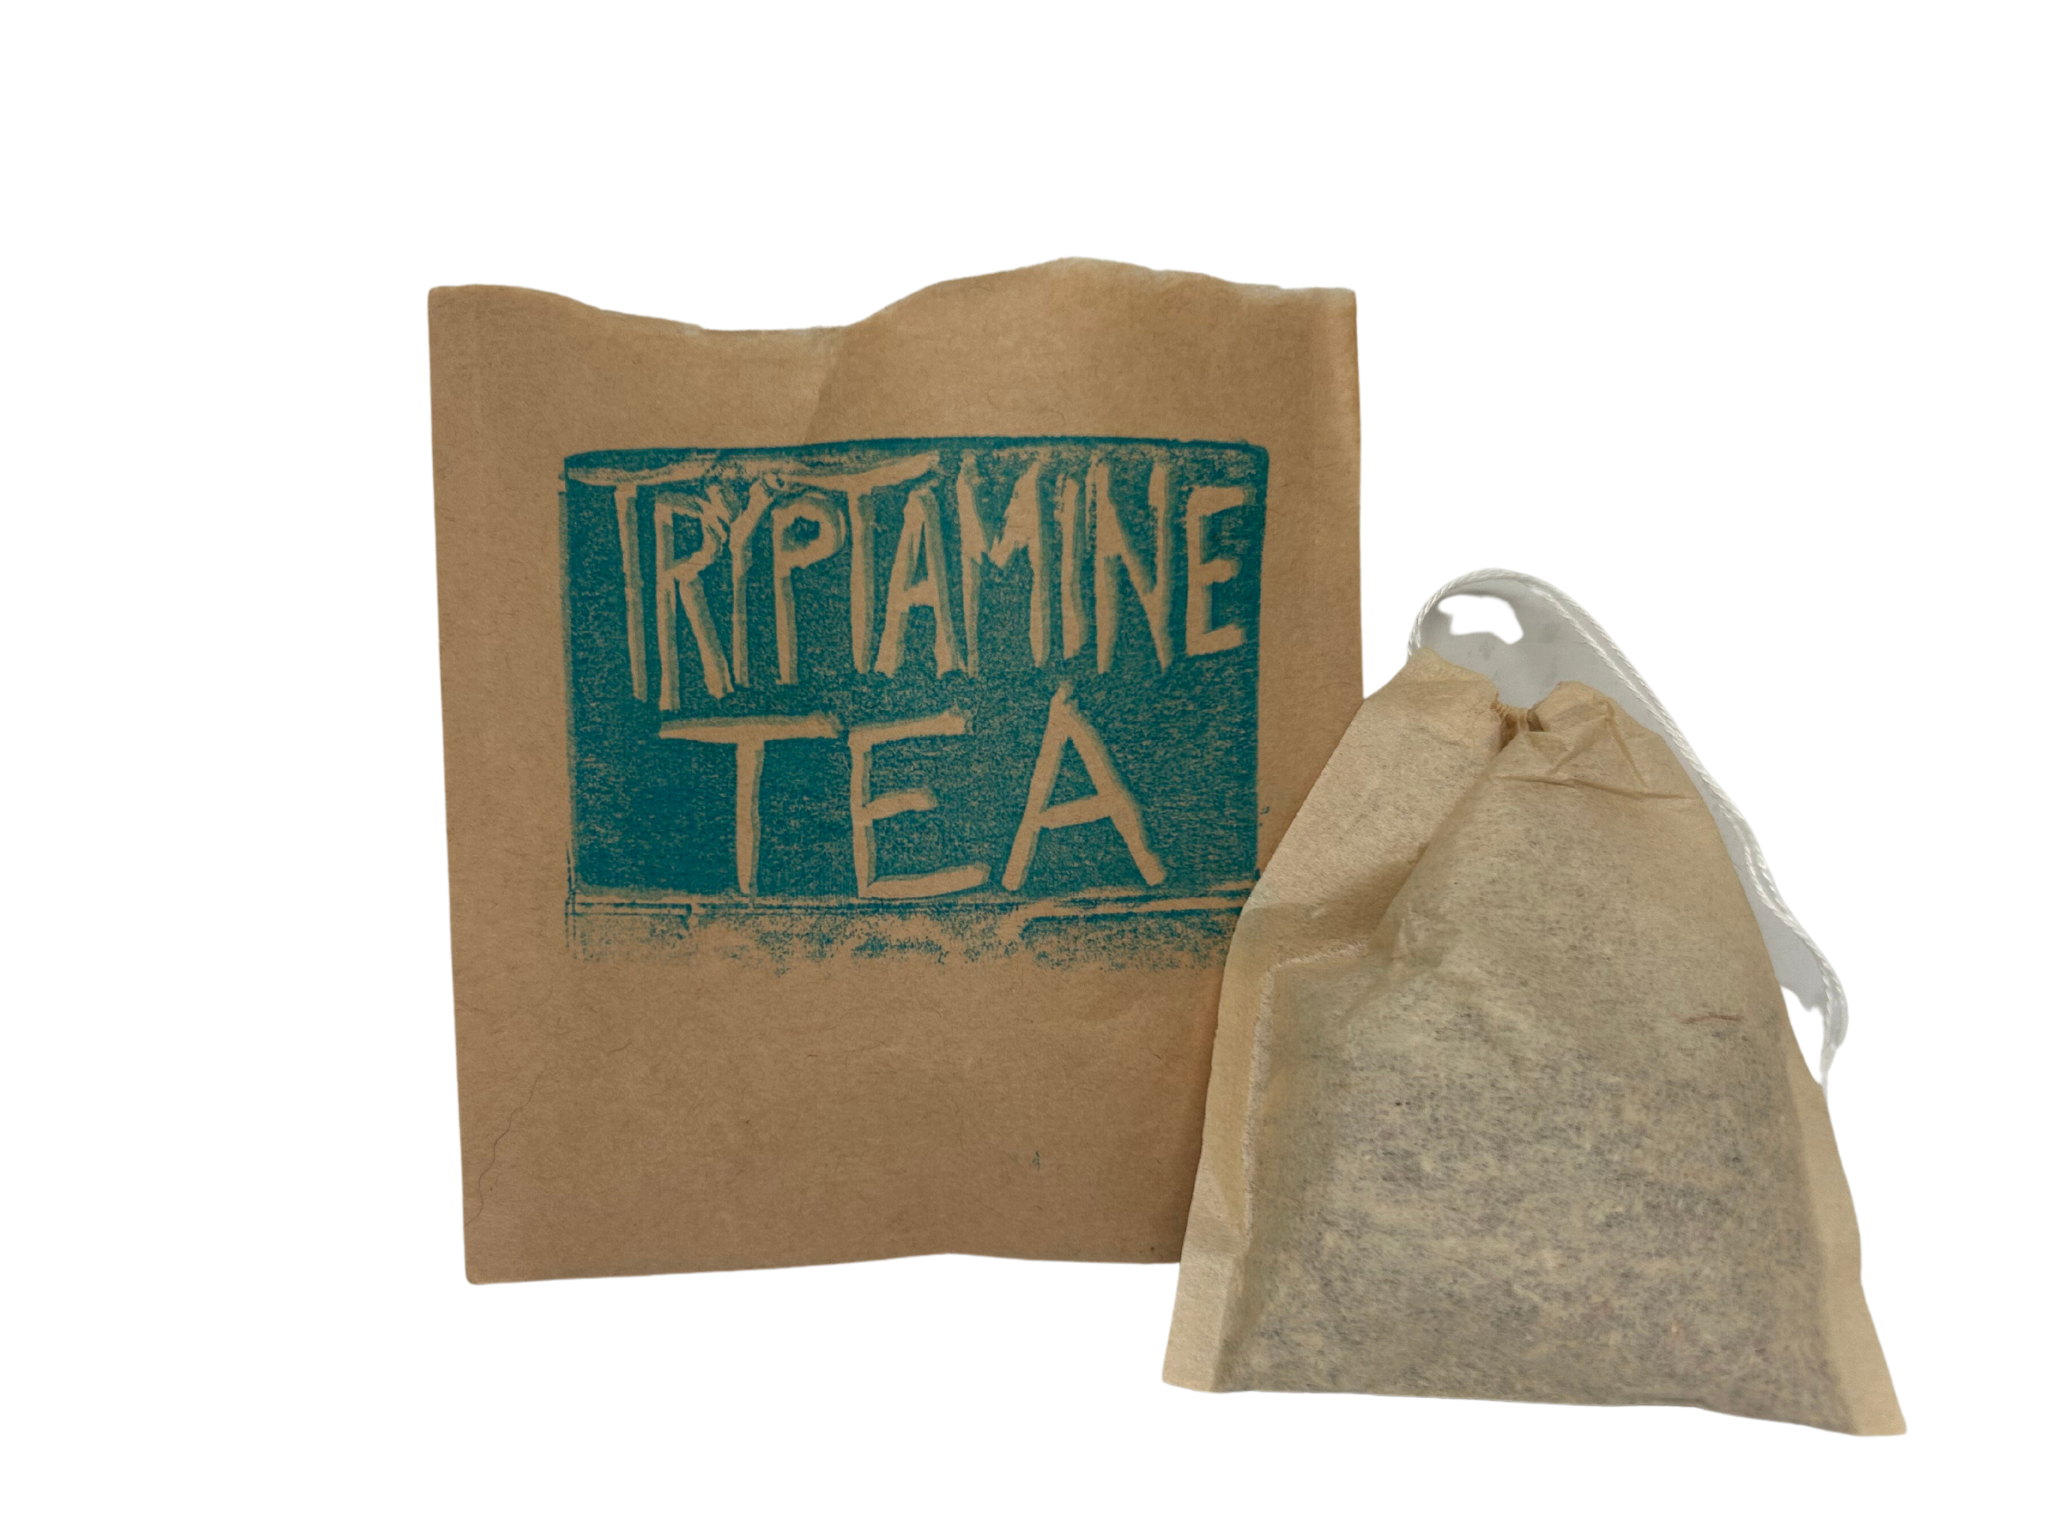 Tryptamine Tea